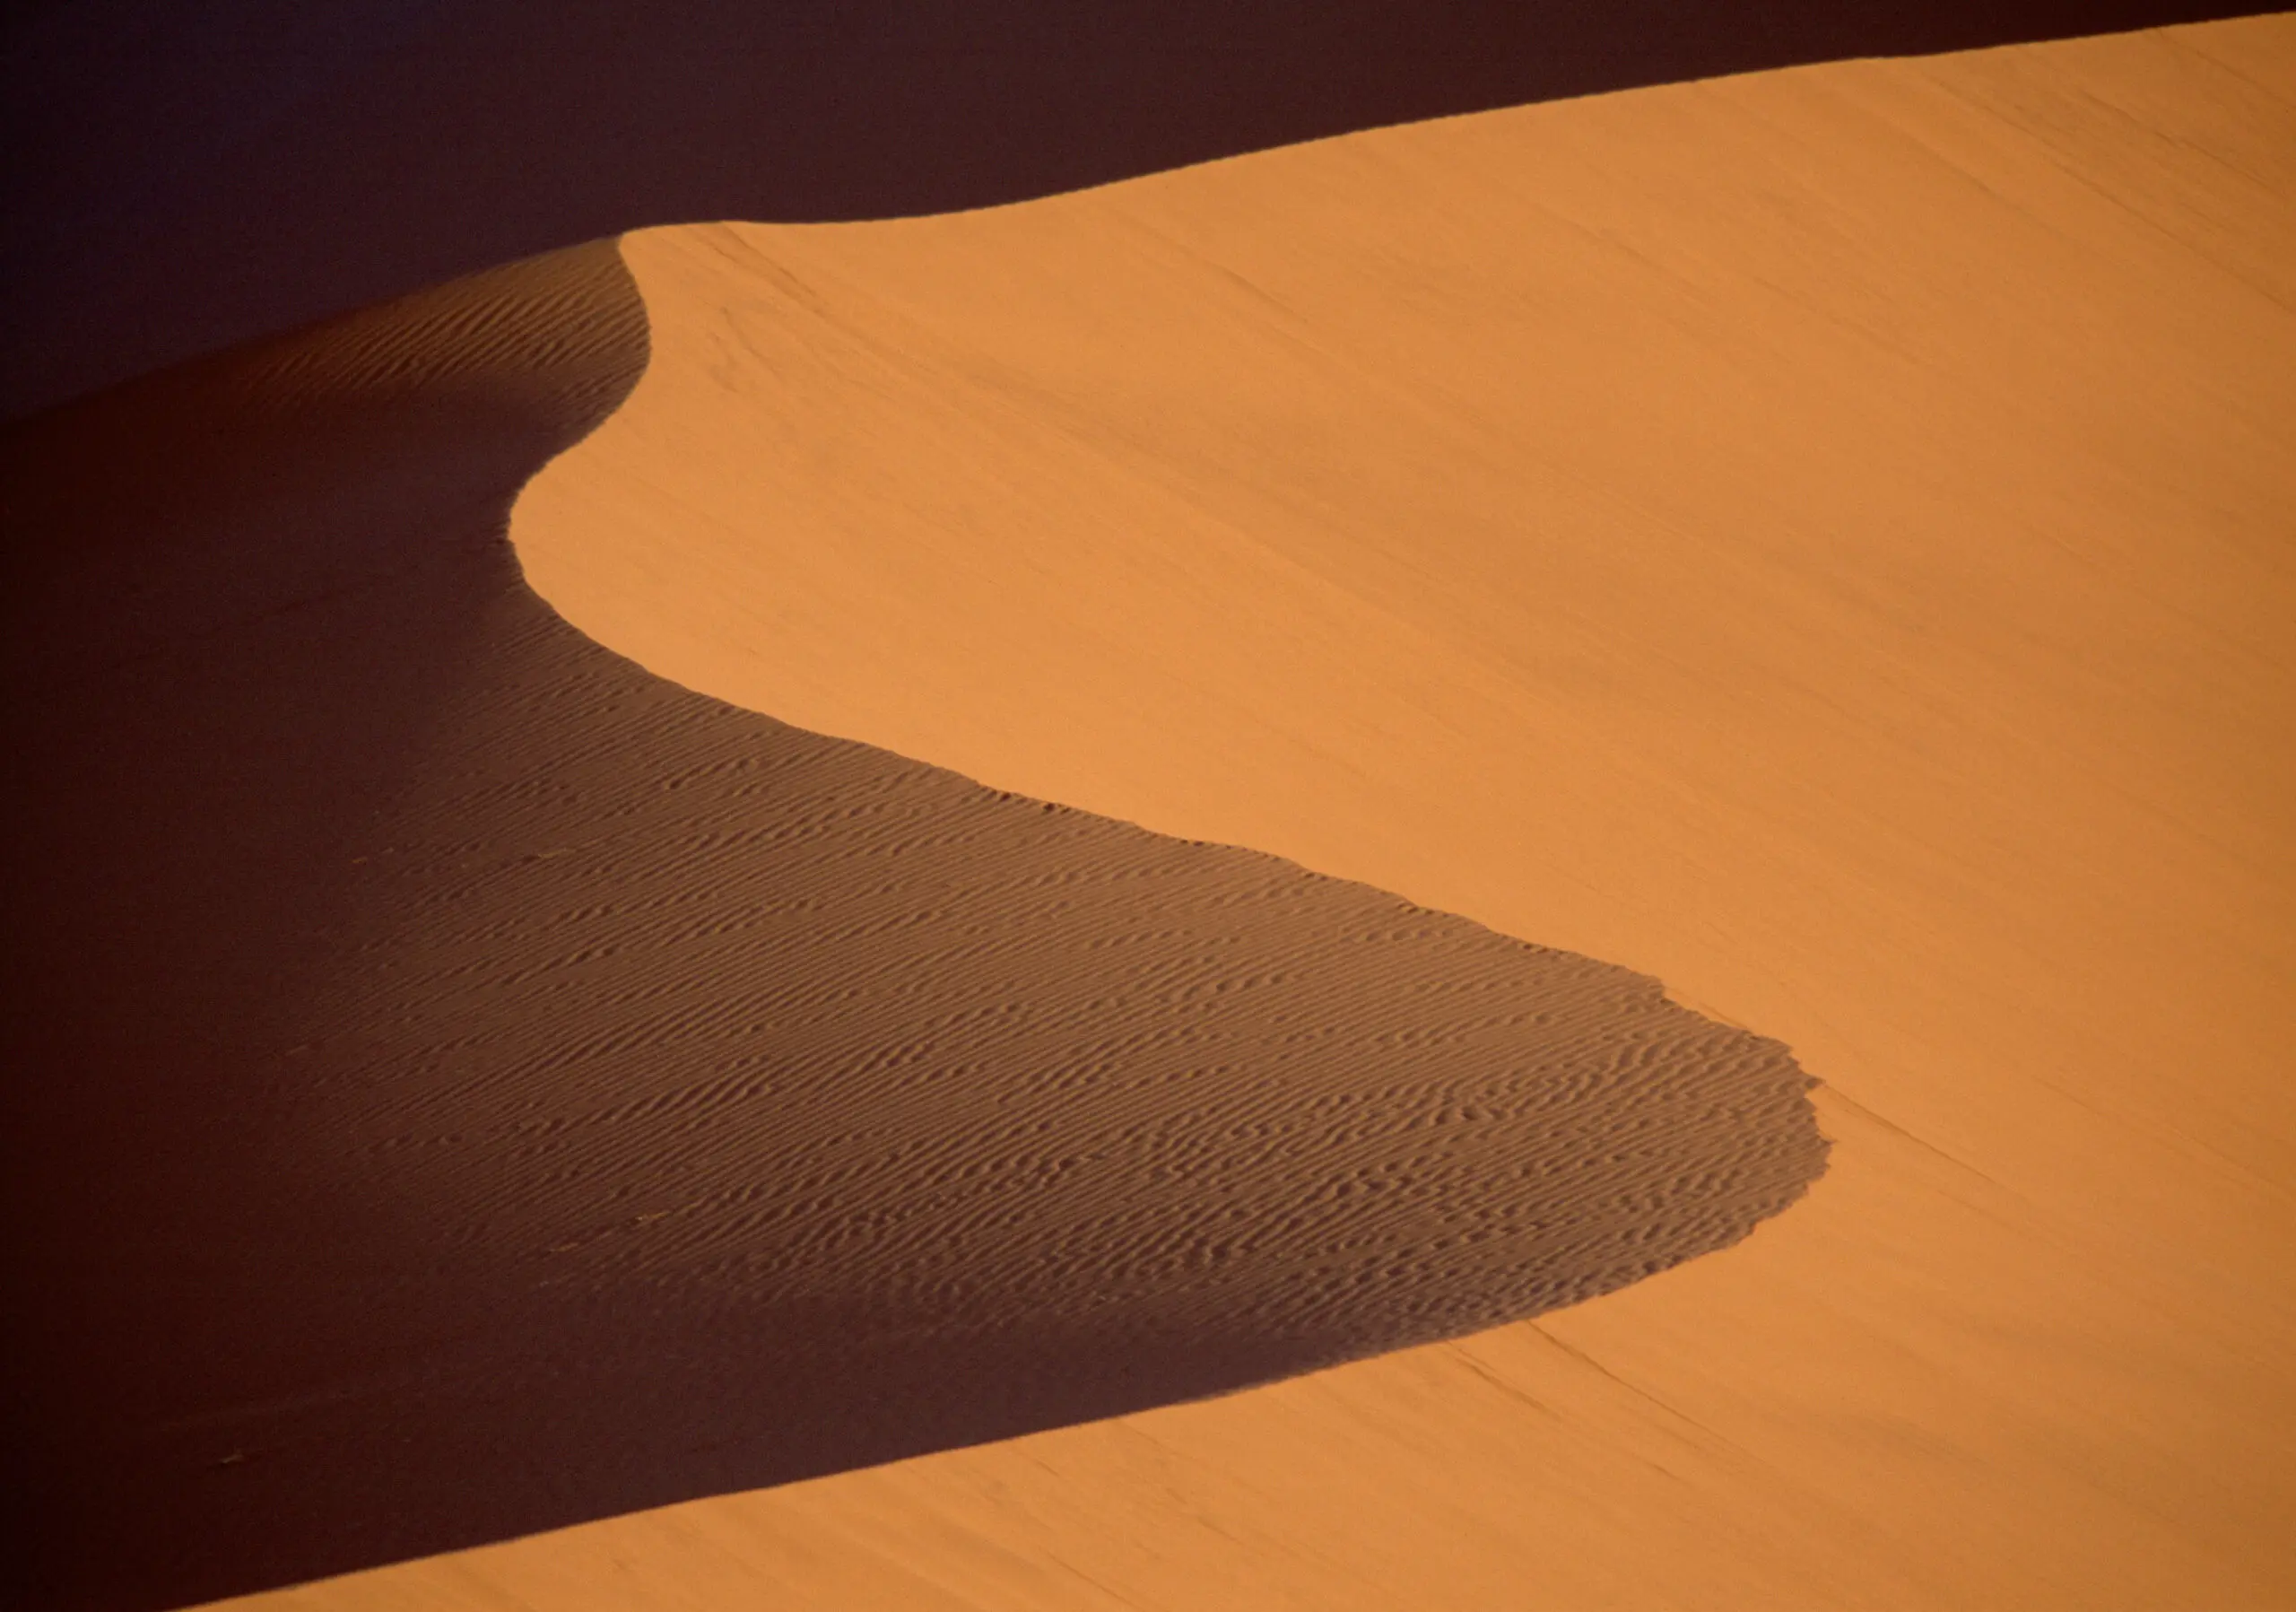 Wandbild (271) Dune 45 präsentiert: Details und Strukturen,Abstrakt,Landschaften,Wüste,Sonstige Naturdetails